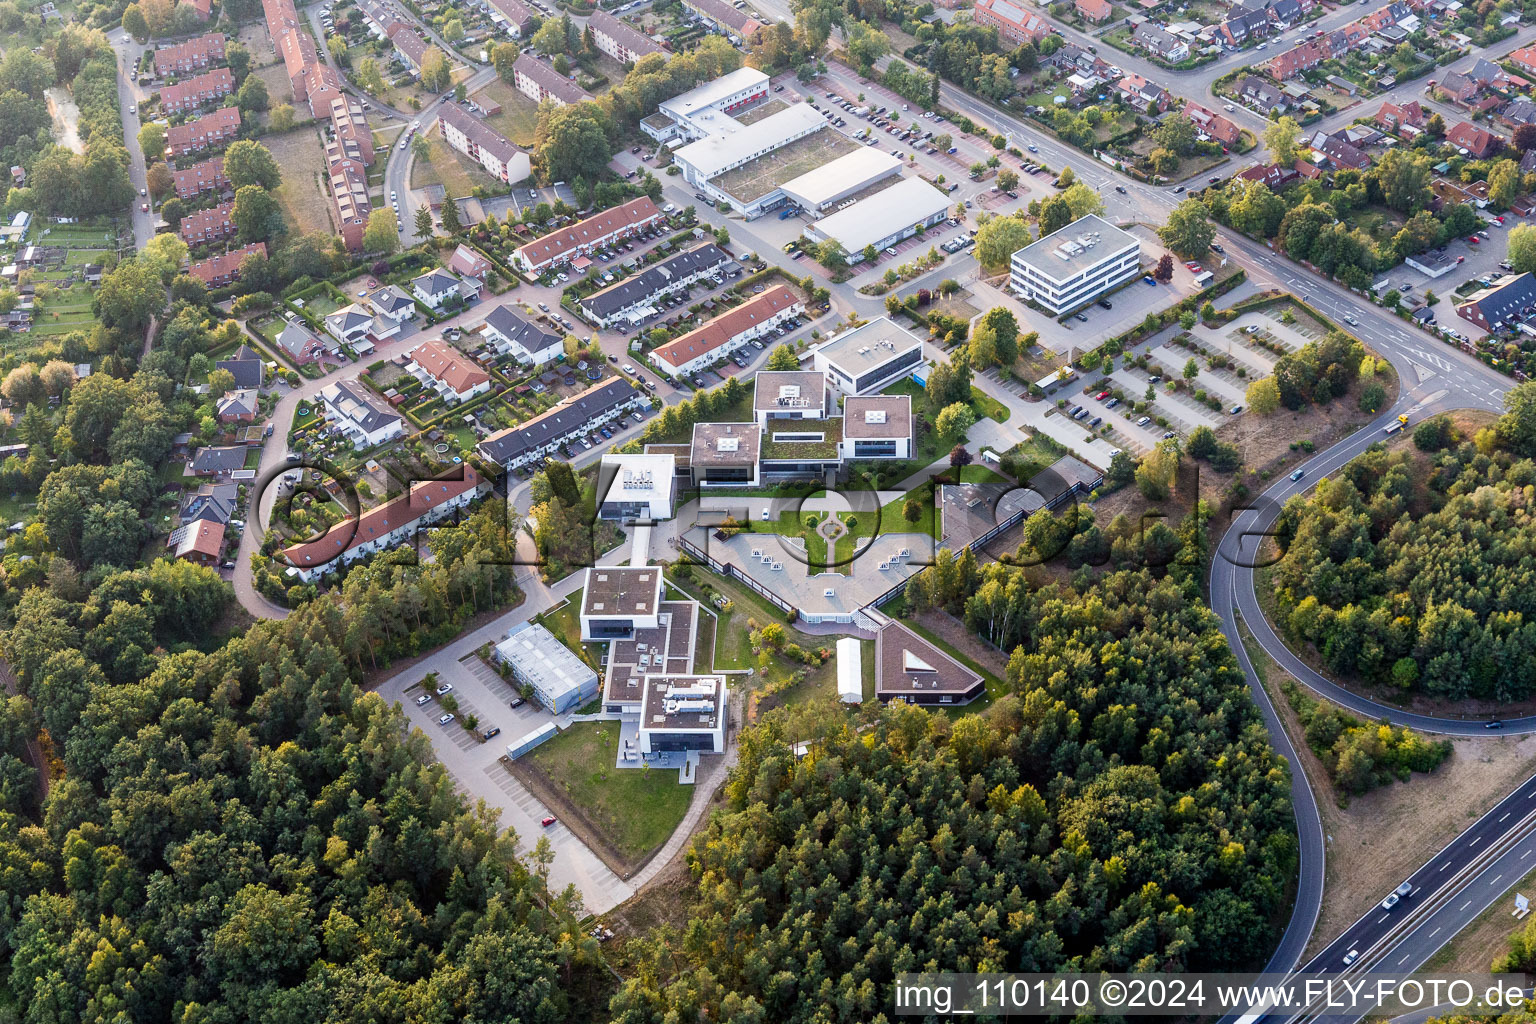 Luftbild von Campus- Gebäude der Werum Software & Systems AG und Werum IT Solutions GmbH im Ortsteil Moorfeld in Lüneburg im Bundesland Niedersachsen, Deutschland